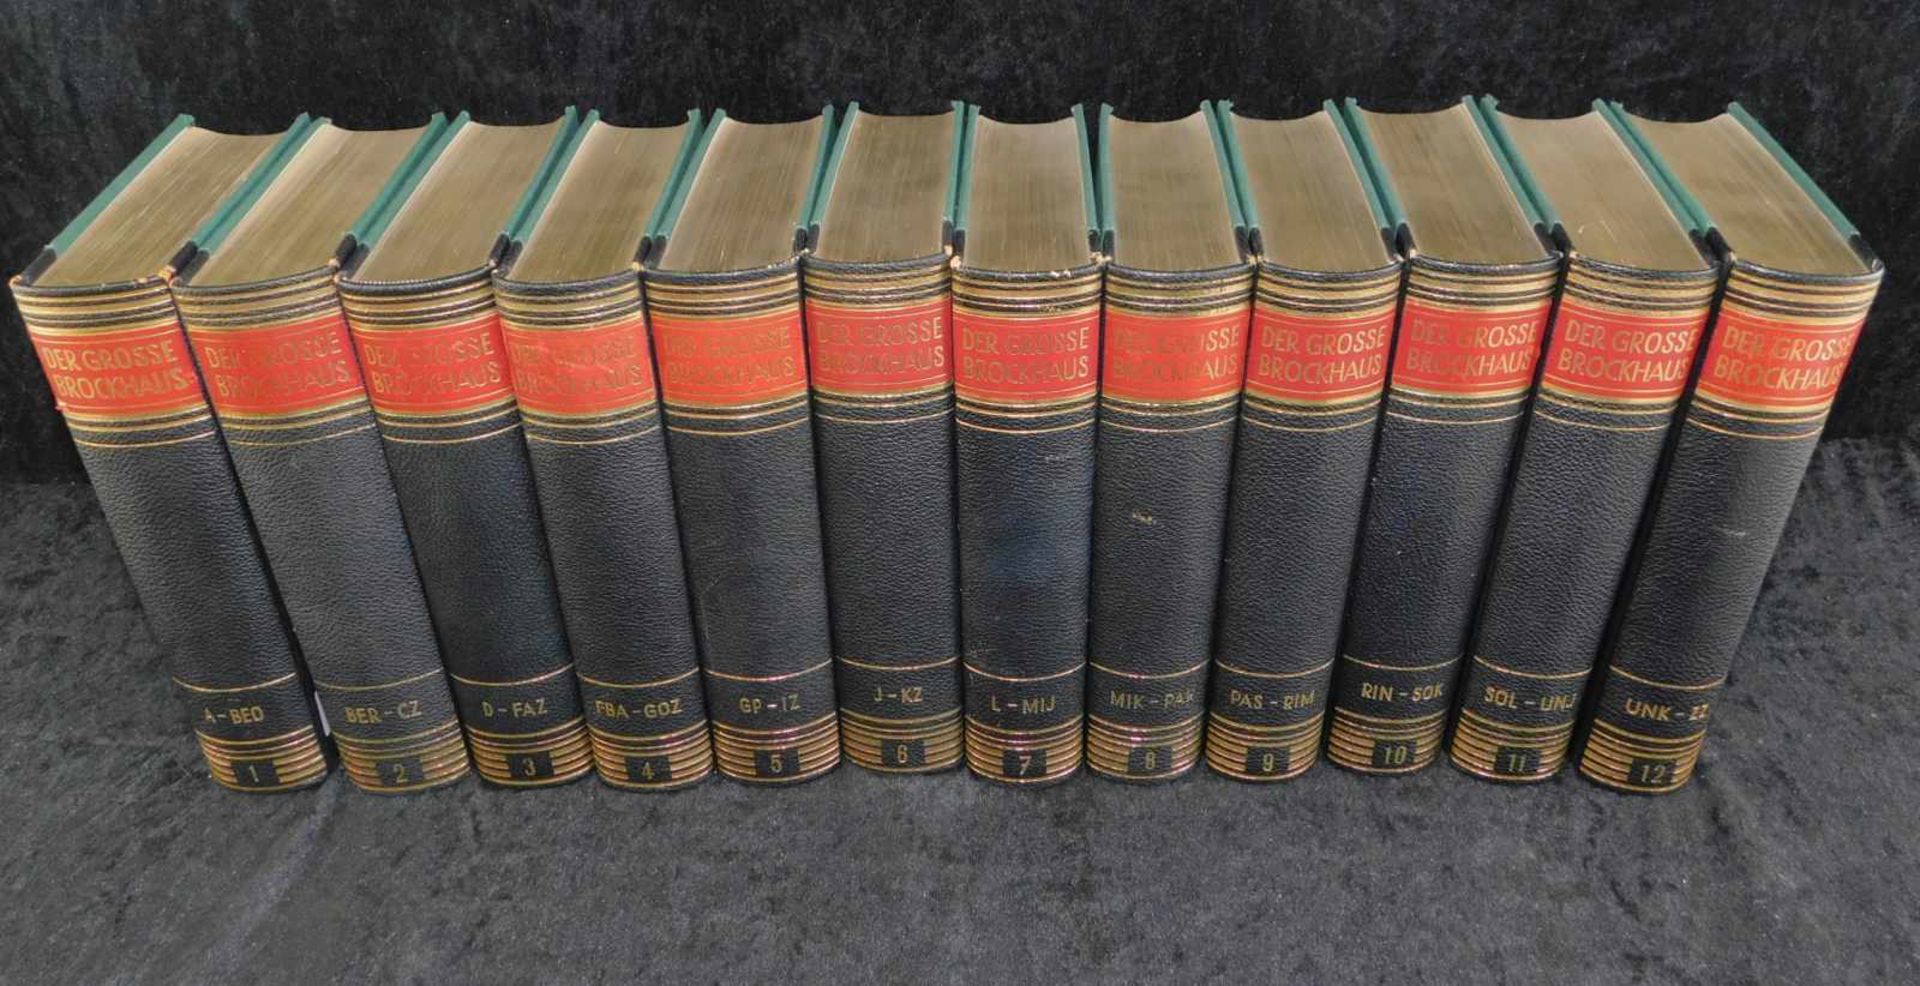 Der grosse Brockhaus,12 Bände, 16. völlig neu überarb. Auflage, F.A. Brockhaus Wiesbaden 1952-